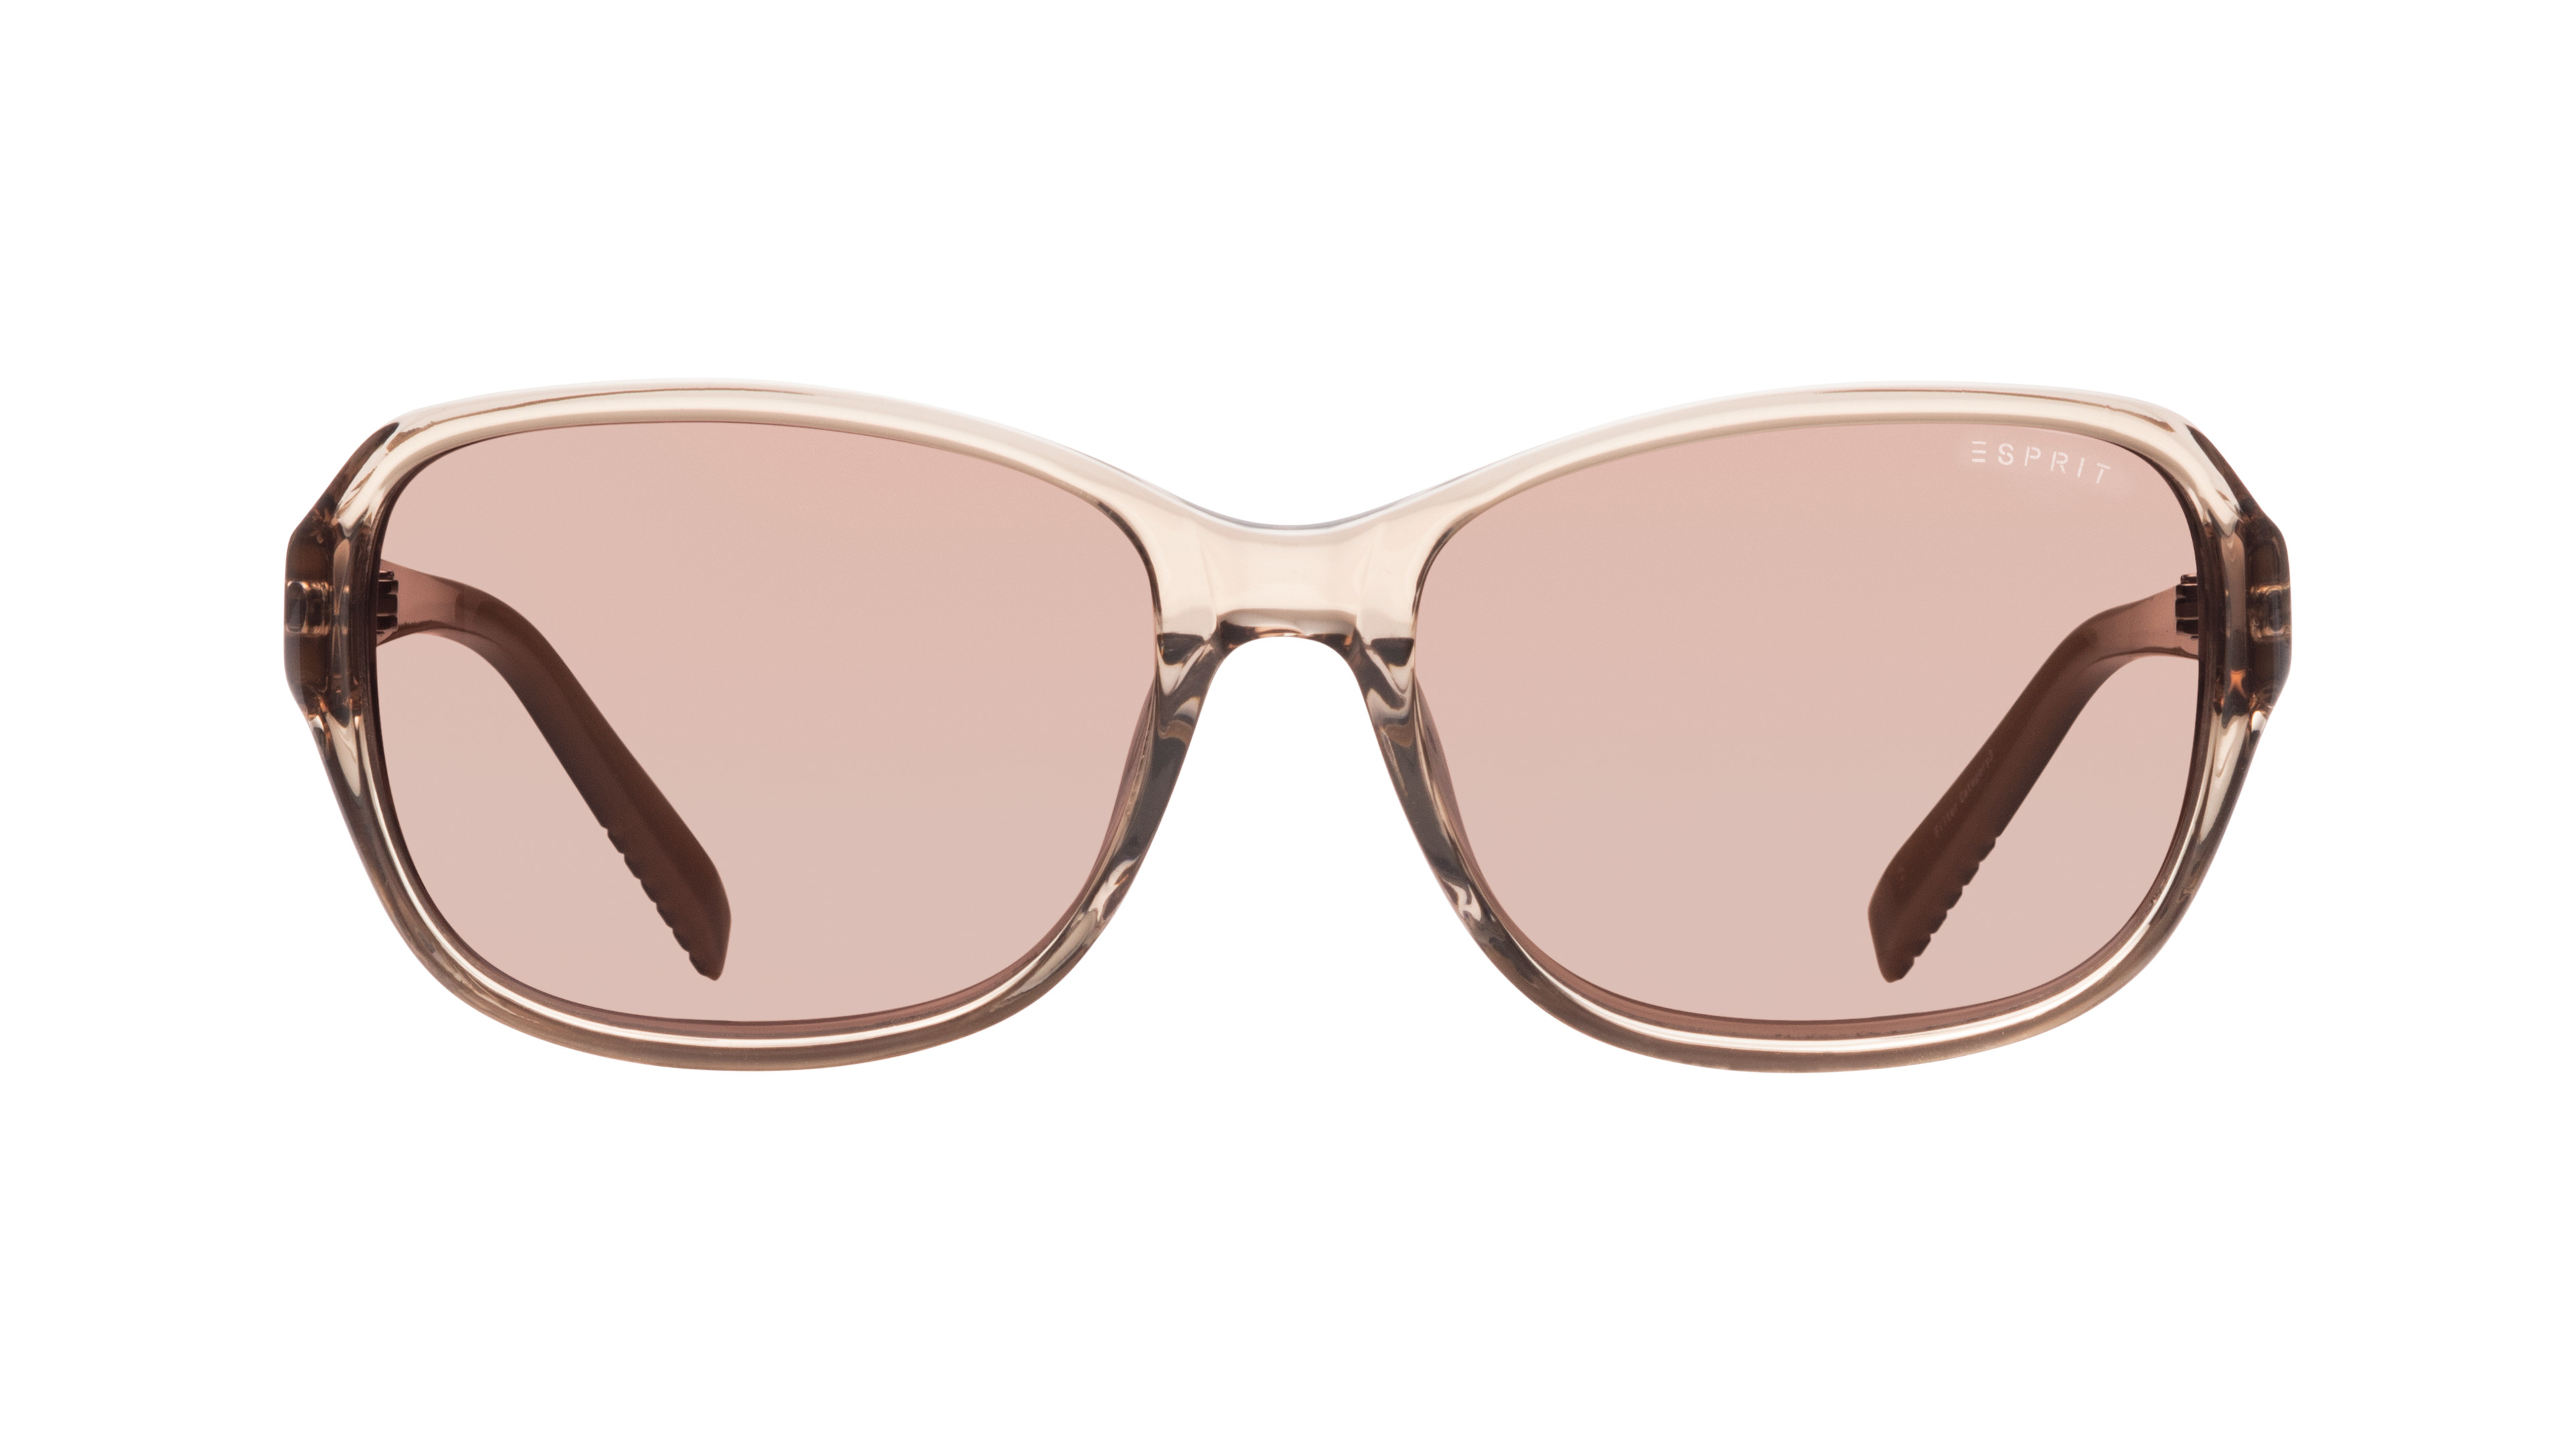 [products.image.front] Esprit 17885 C-535 Sonnenbrille